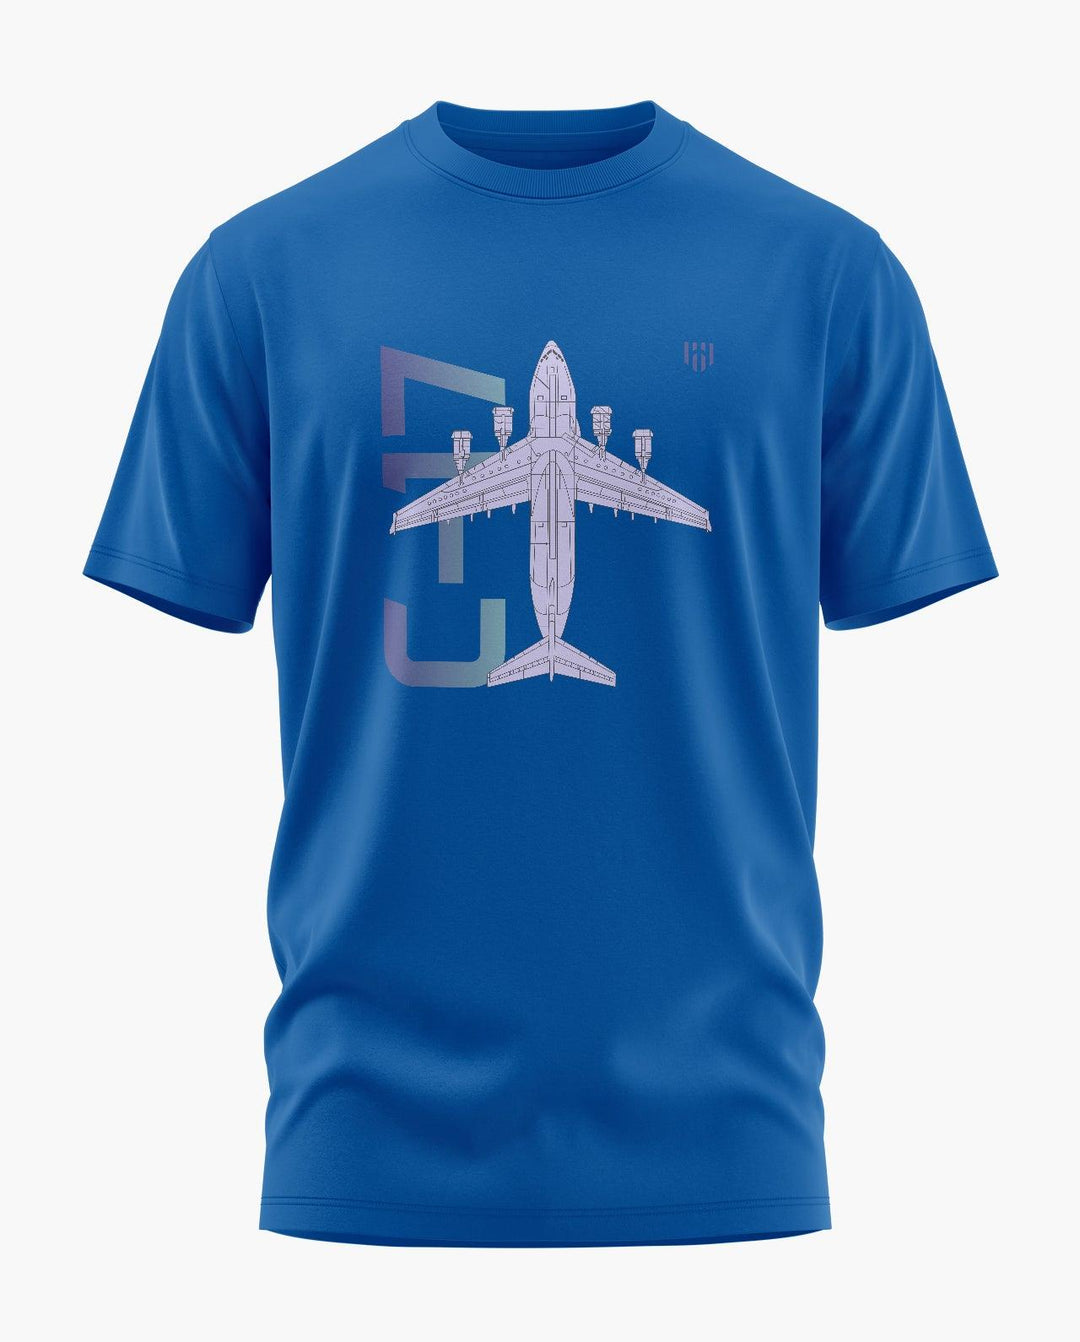 C-17 Blueprint Top T-Shirt - Aero Armour